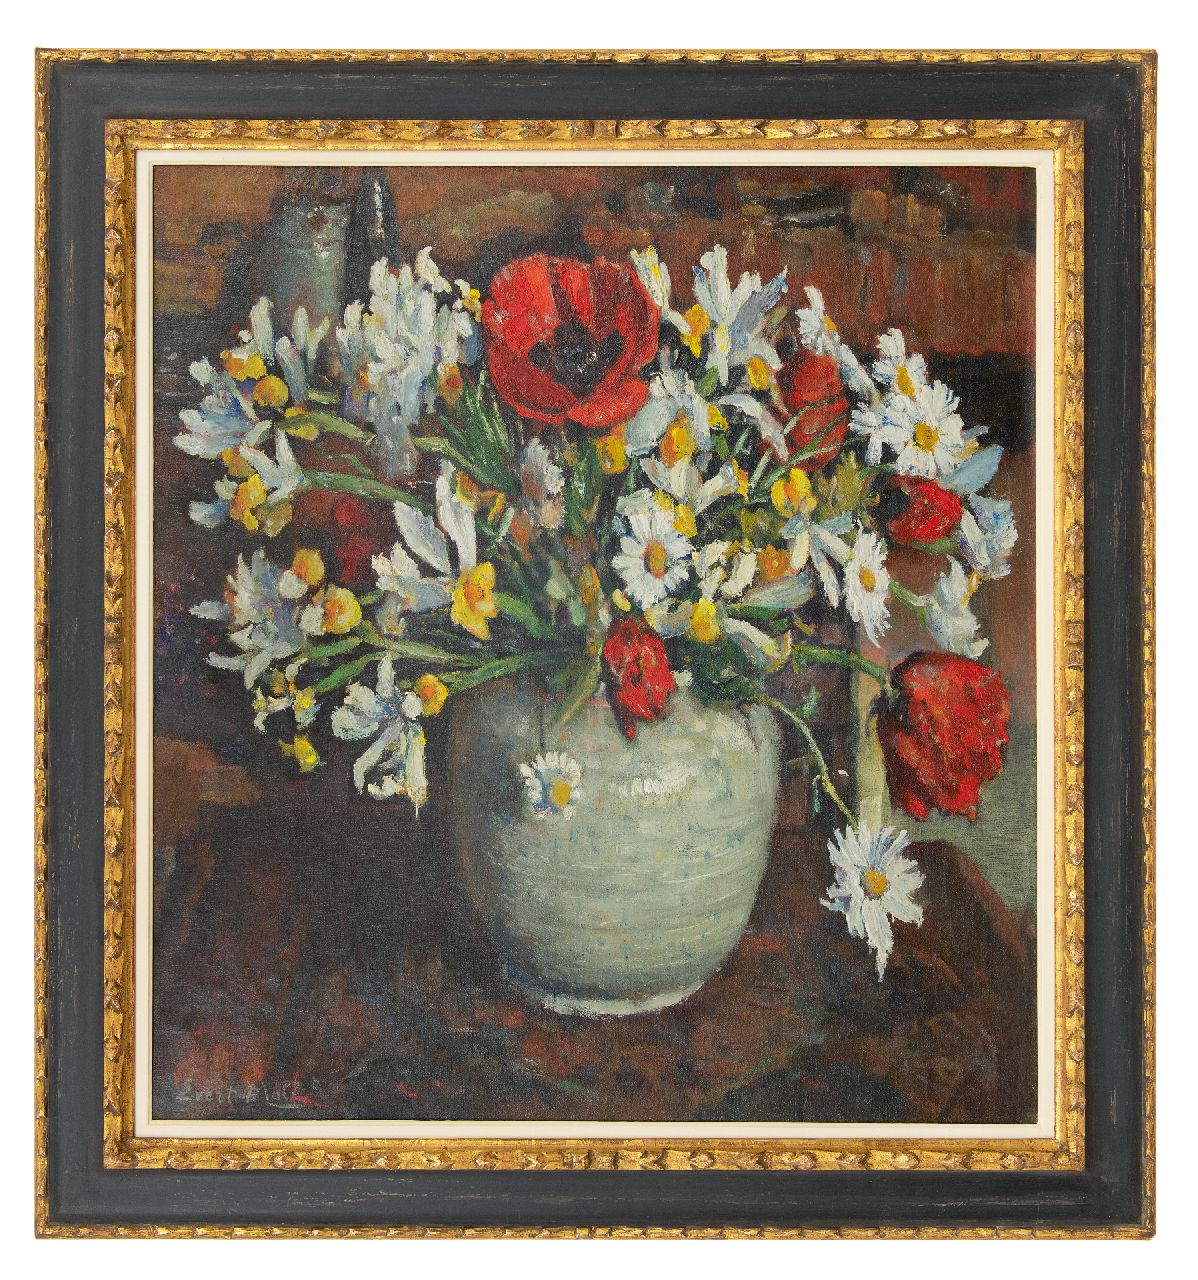 Moll E.  | Evert Moll | Schilderijen te koop aangeboden | Klaprozen en margrieten in witte vaas, olieverf op doek 76,0 x 70,2 cm, gesigneerd linksonder